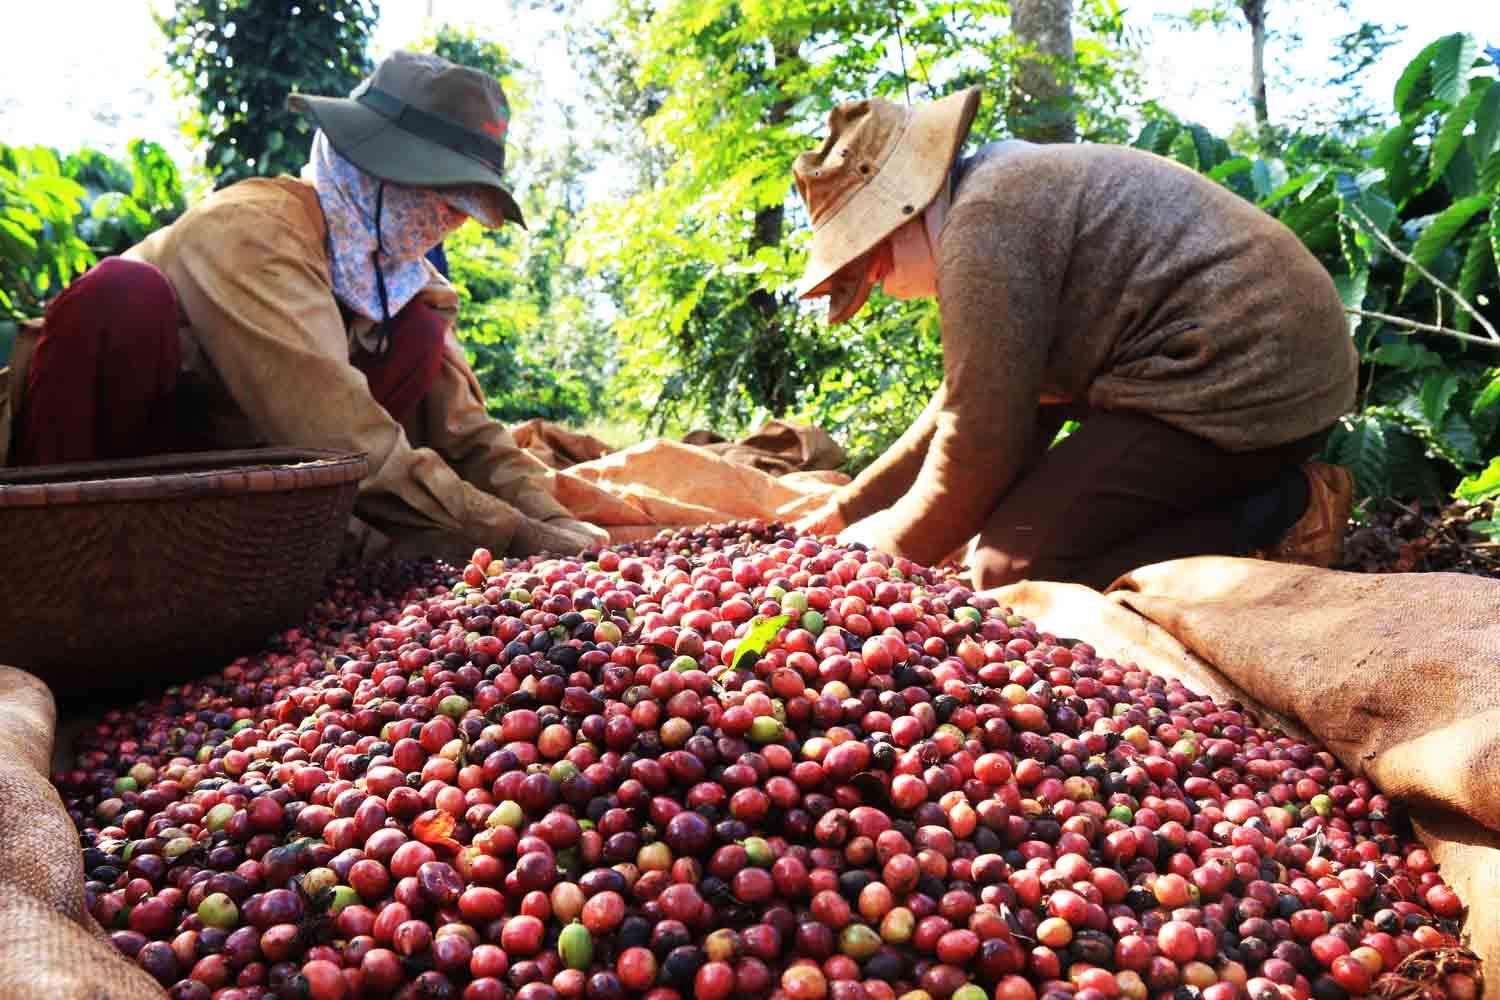 Chuyển động nhà nông 25/11: Giá cà phê tăng cao kỷ lục trong 10 năm qua - Ảnh 2.